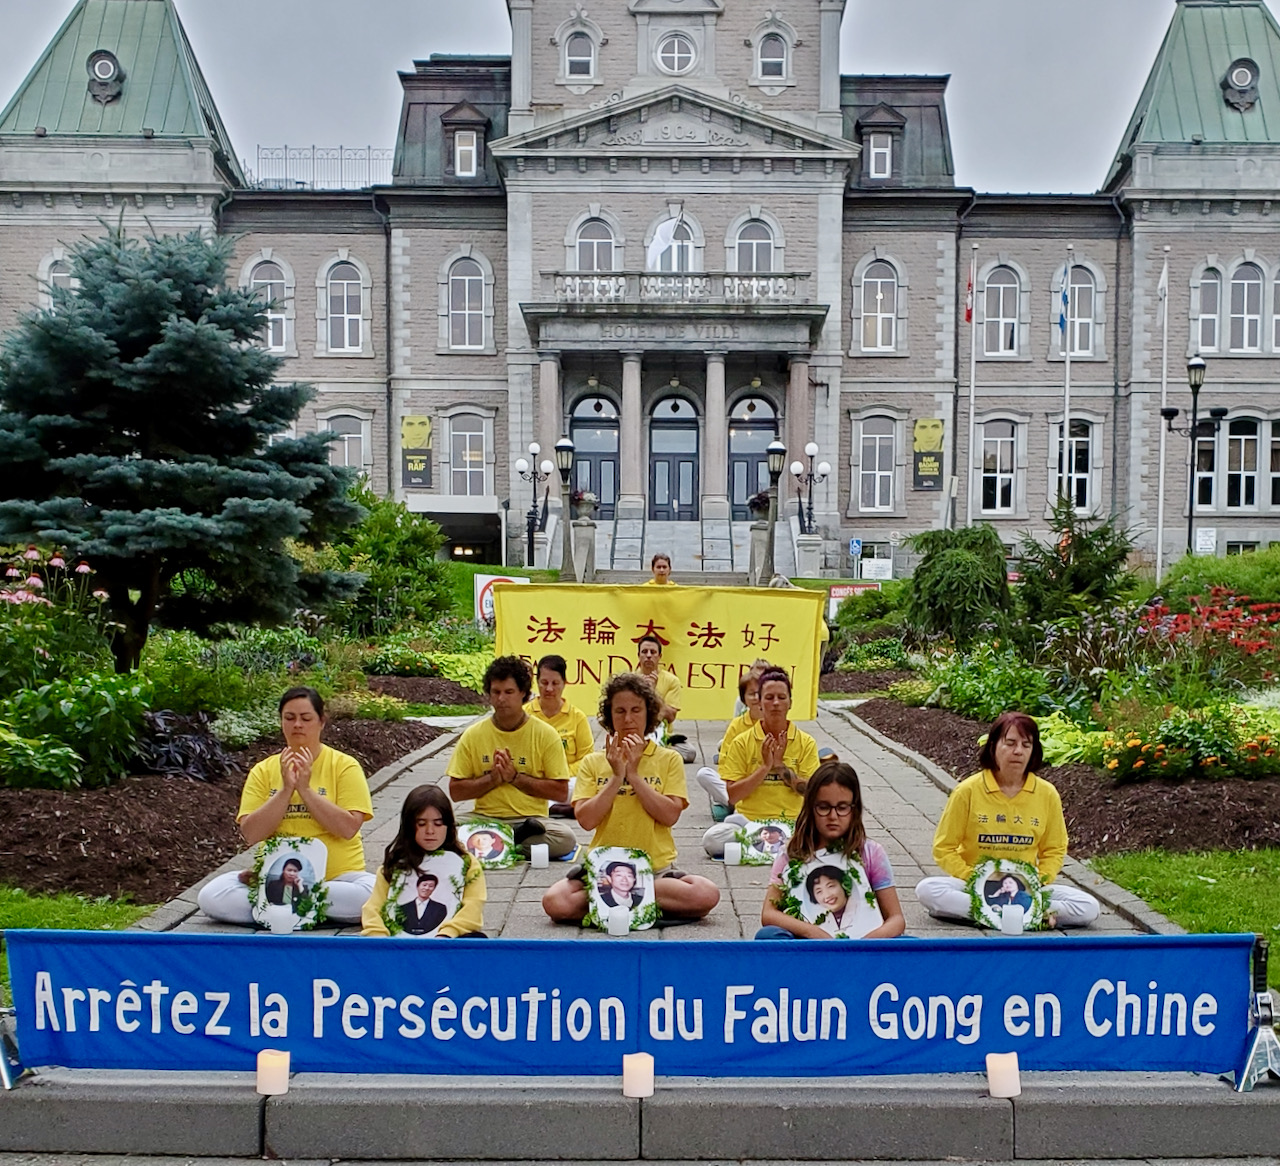 Image for article Des habitants de Sherbrooke sont touchés par le principe du Falun Dafa et apportent leur soutien aux victimes de la répression en Chine